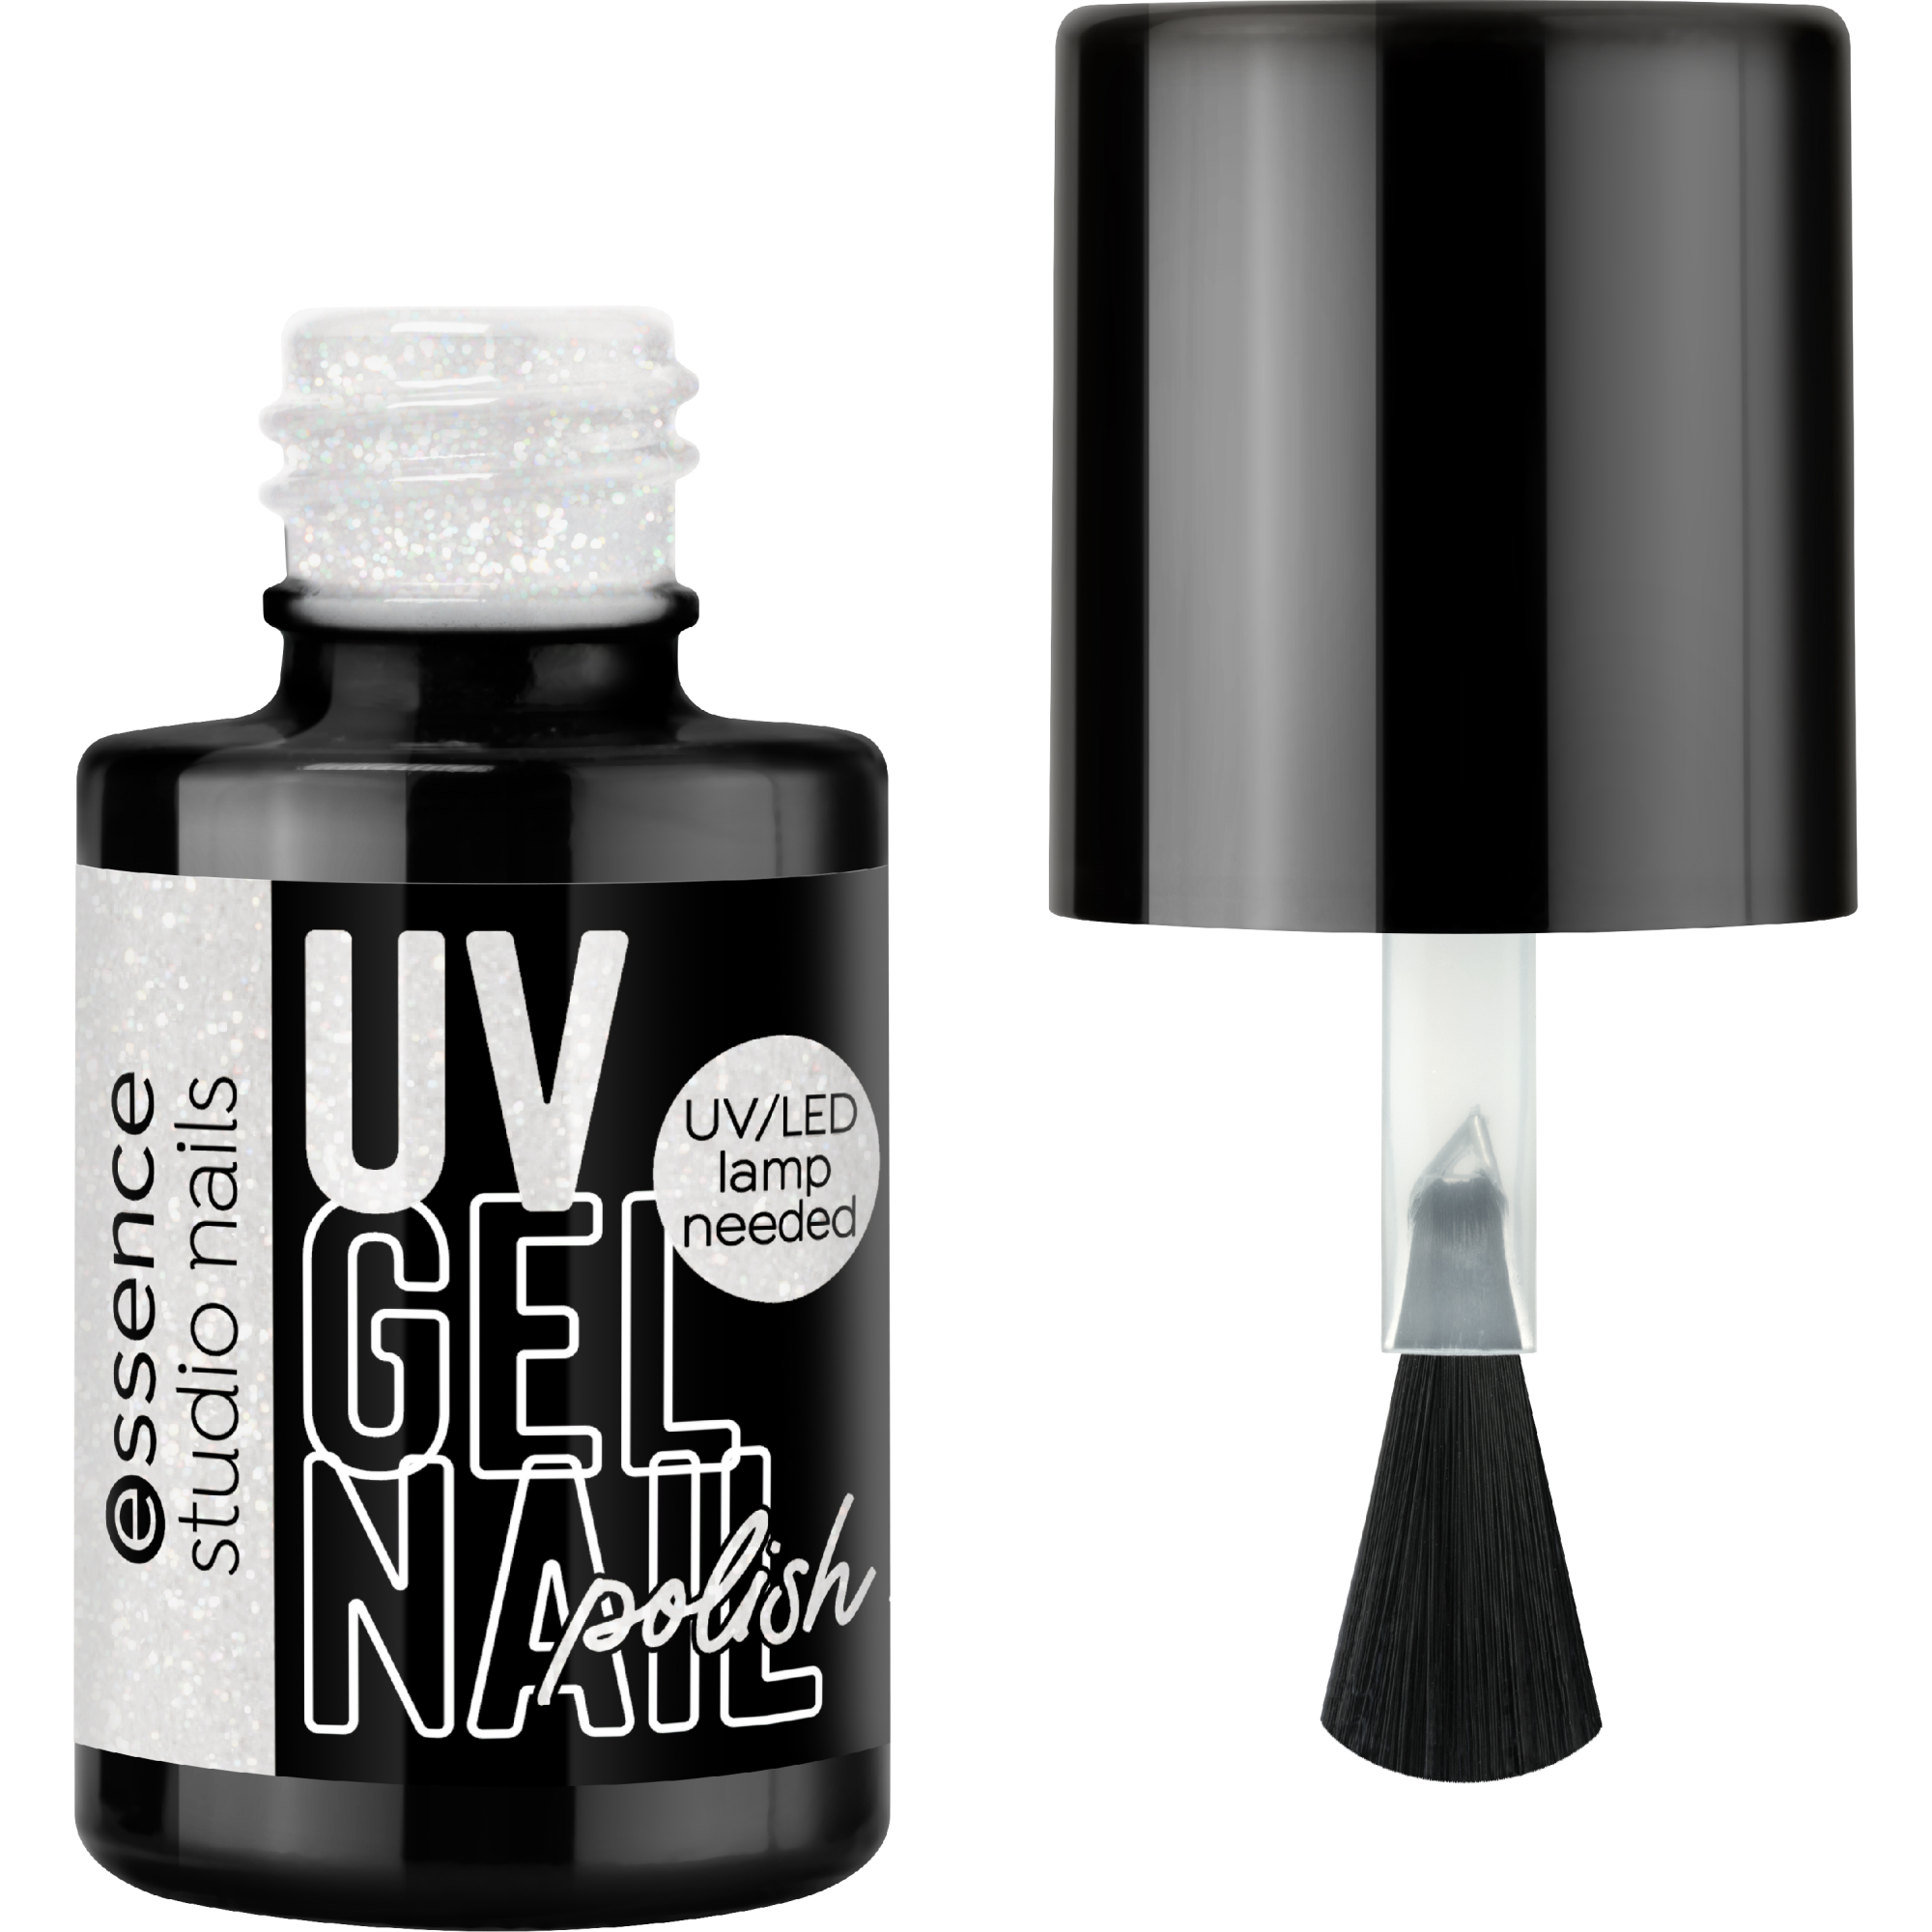 UV GEL NAIL studio nails UV GEL NAIL polish